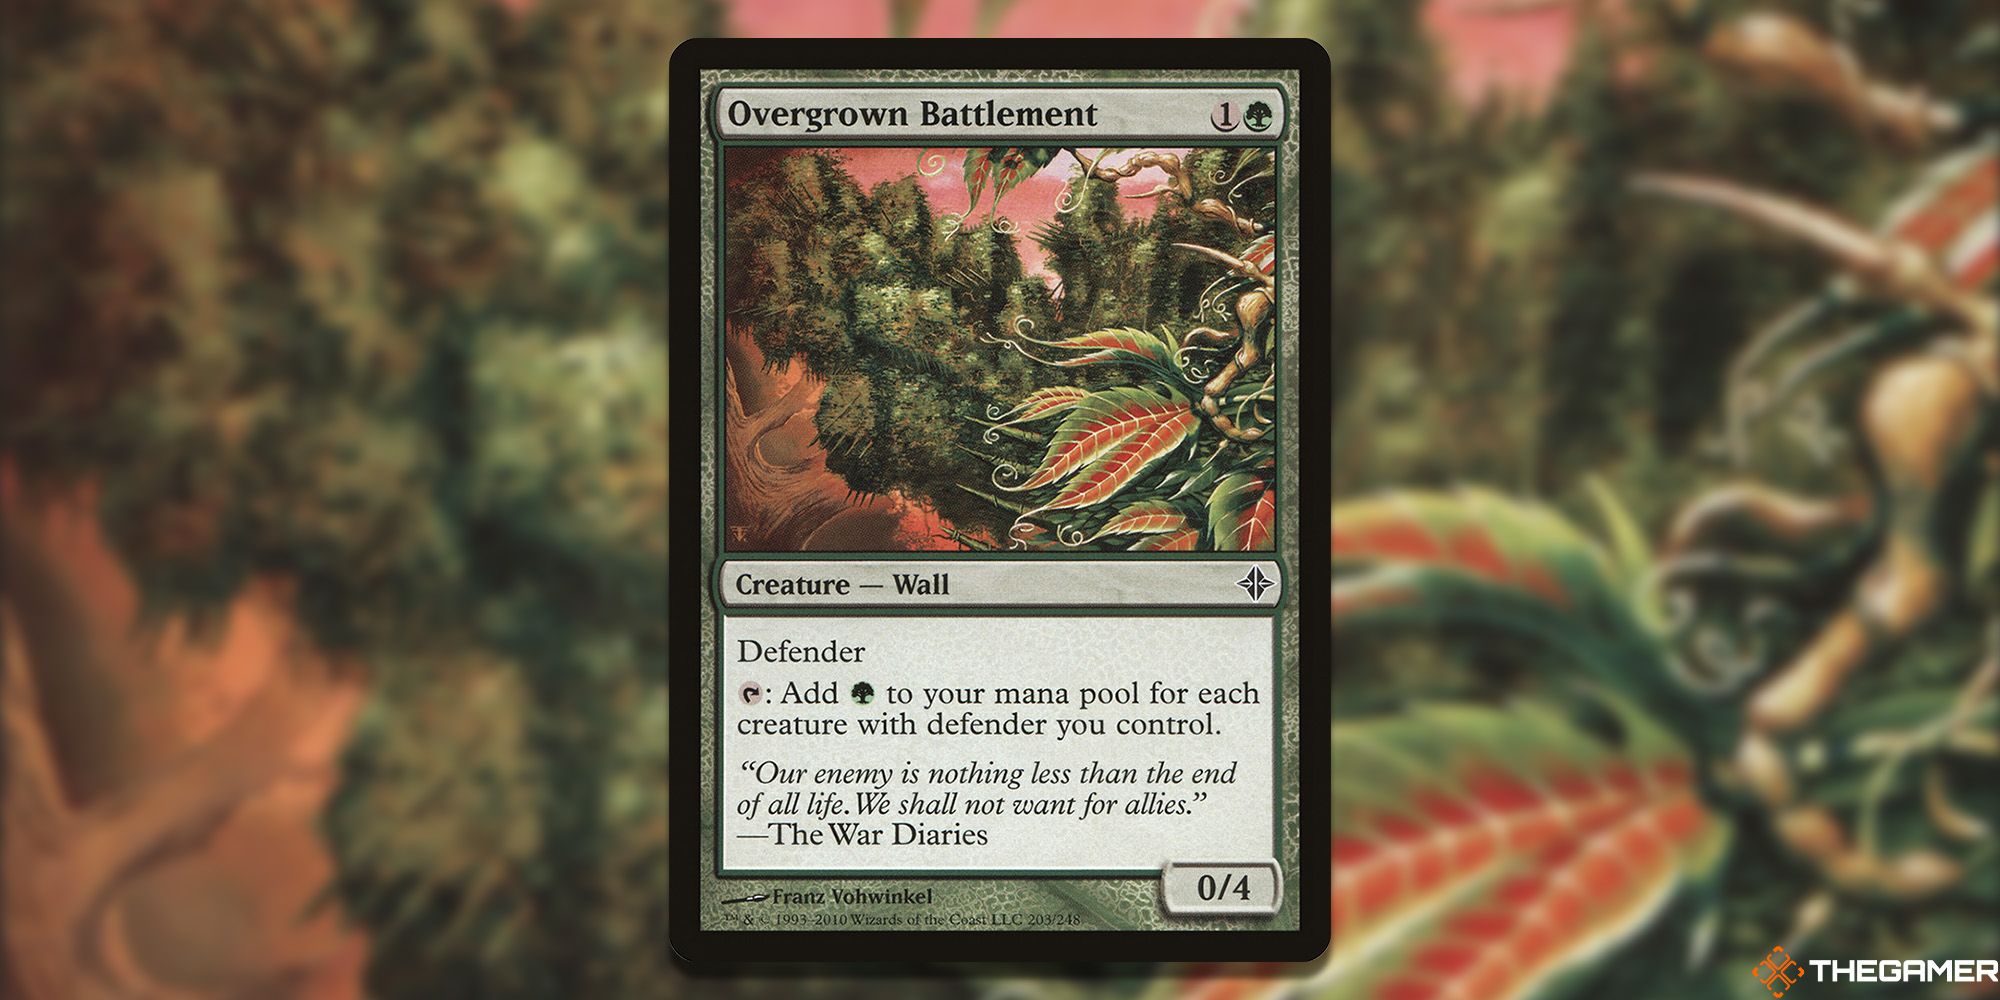 Overgrown Battlement card image.